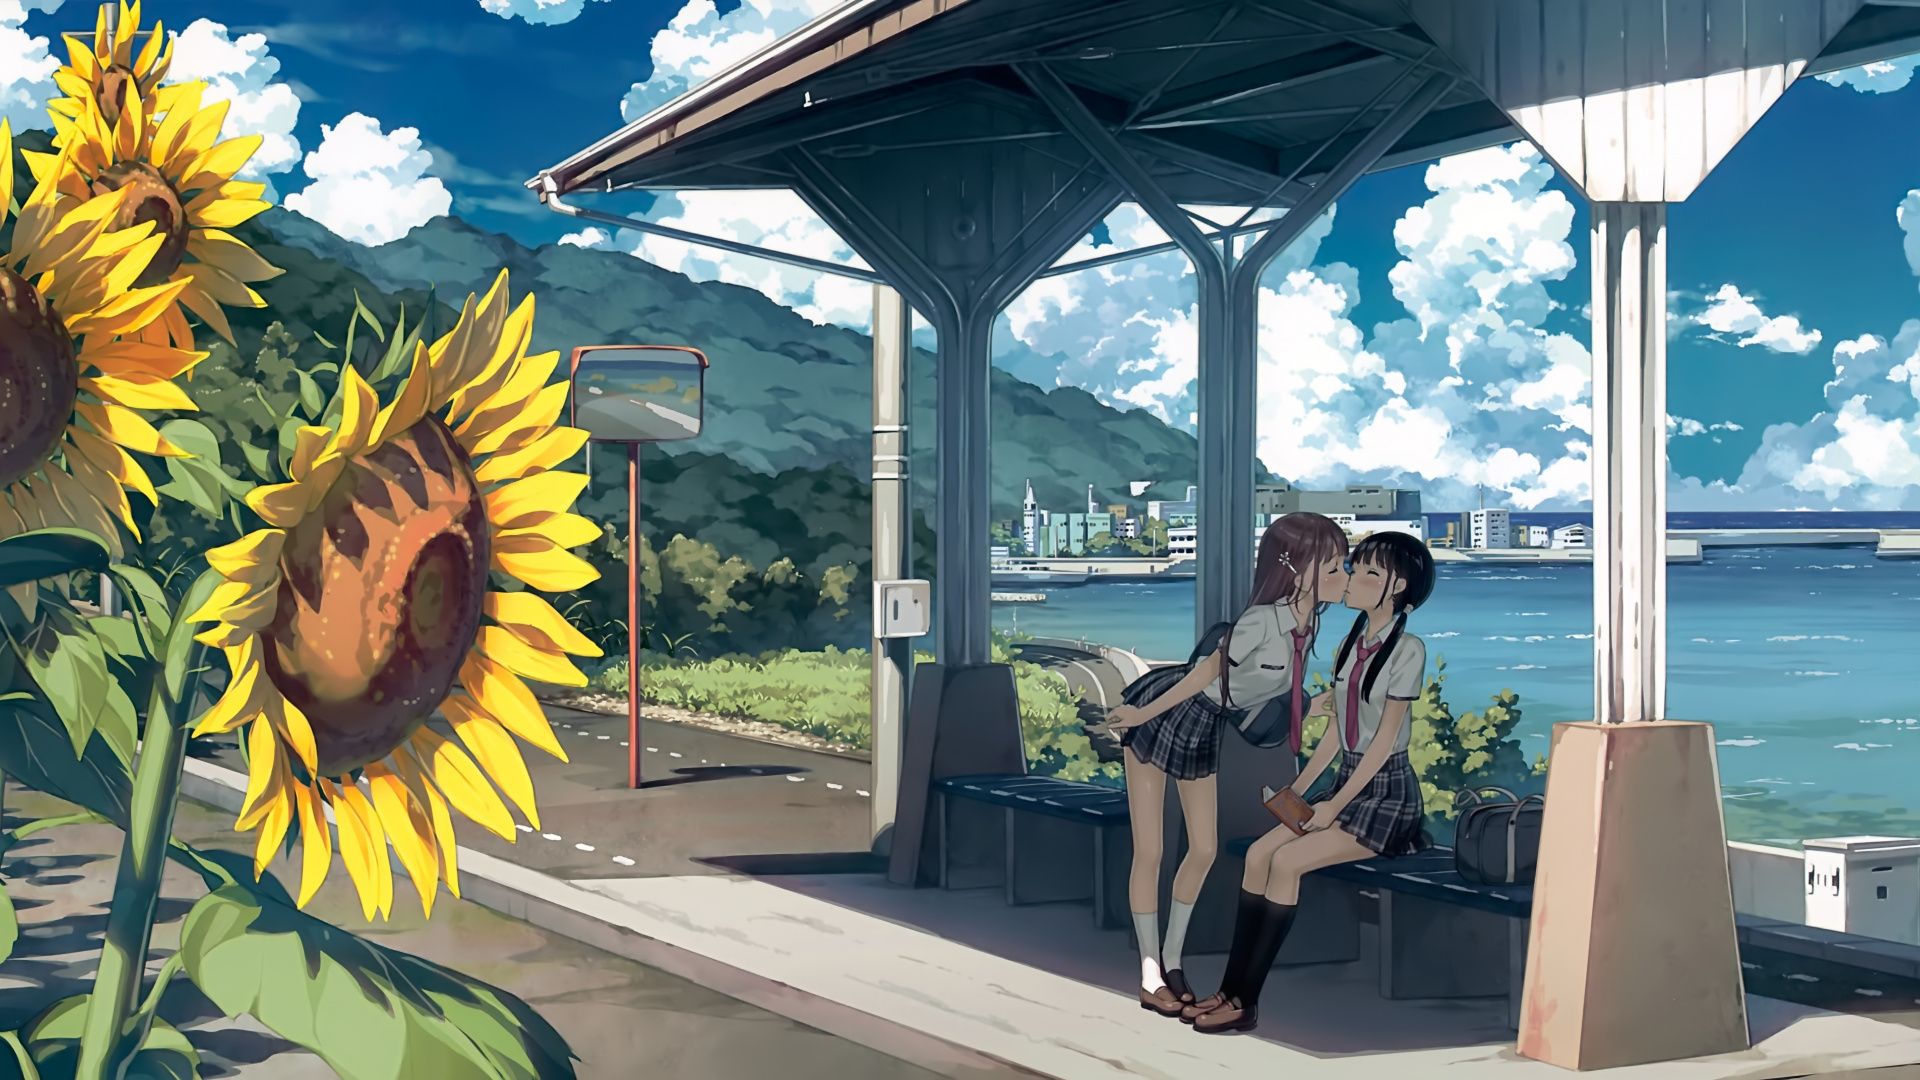 Anime Sunflower Wallpaper